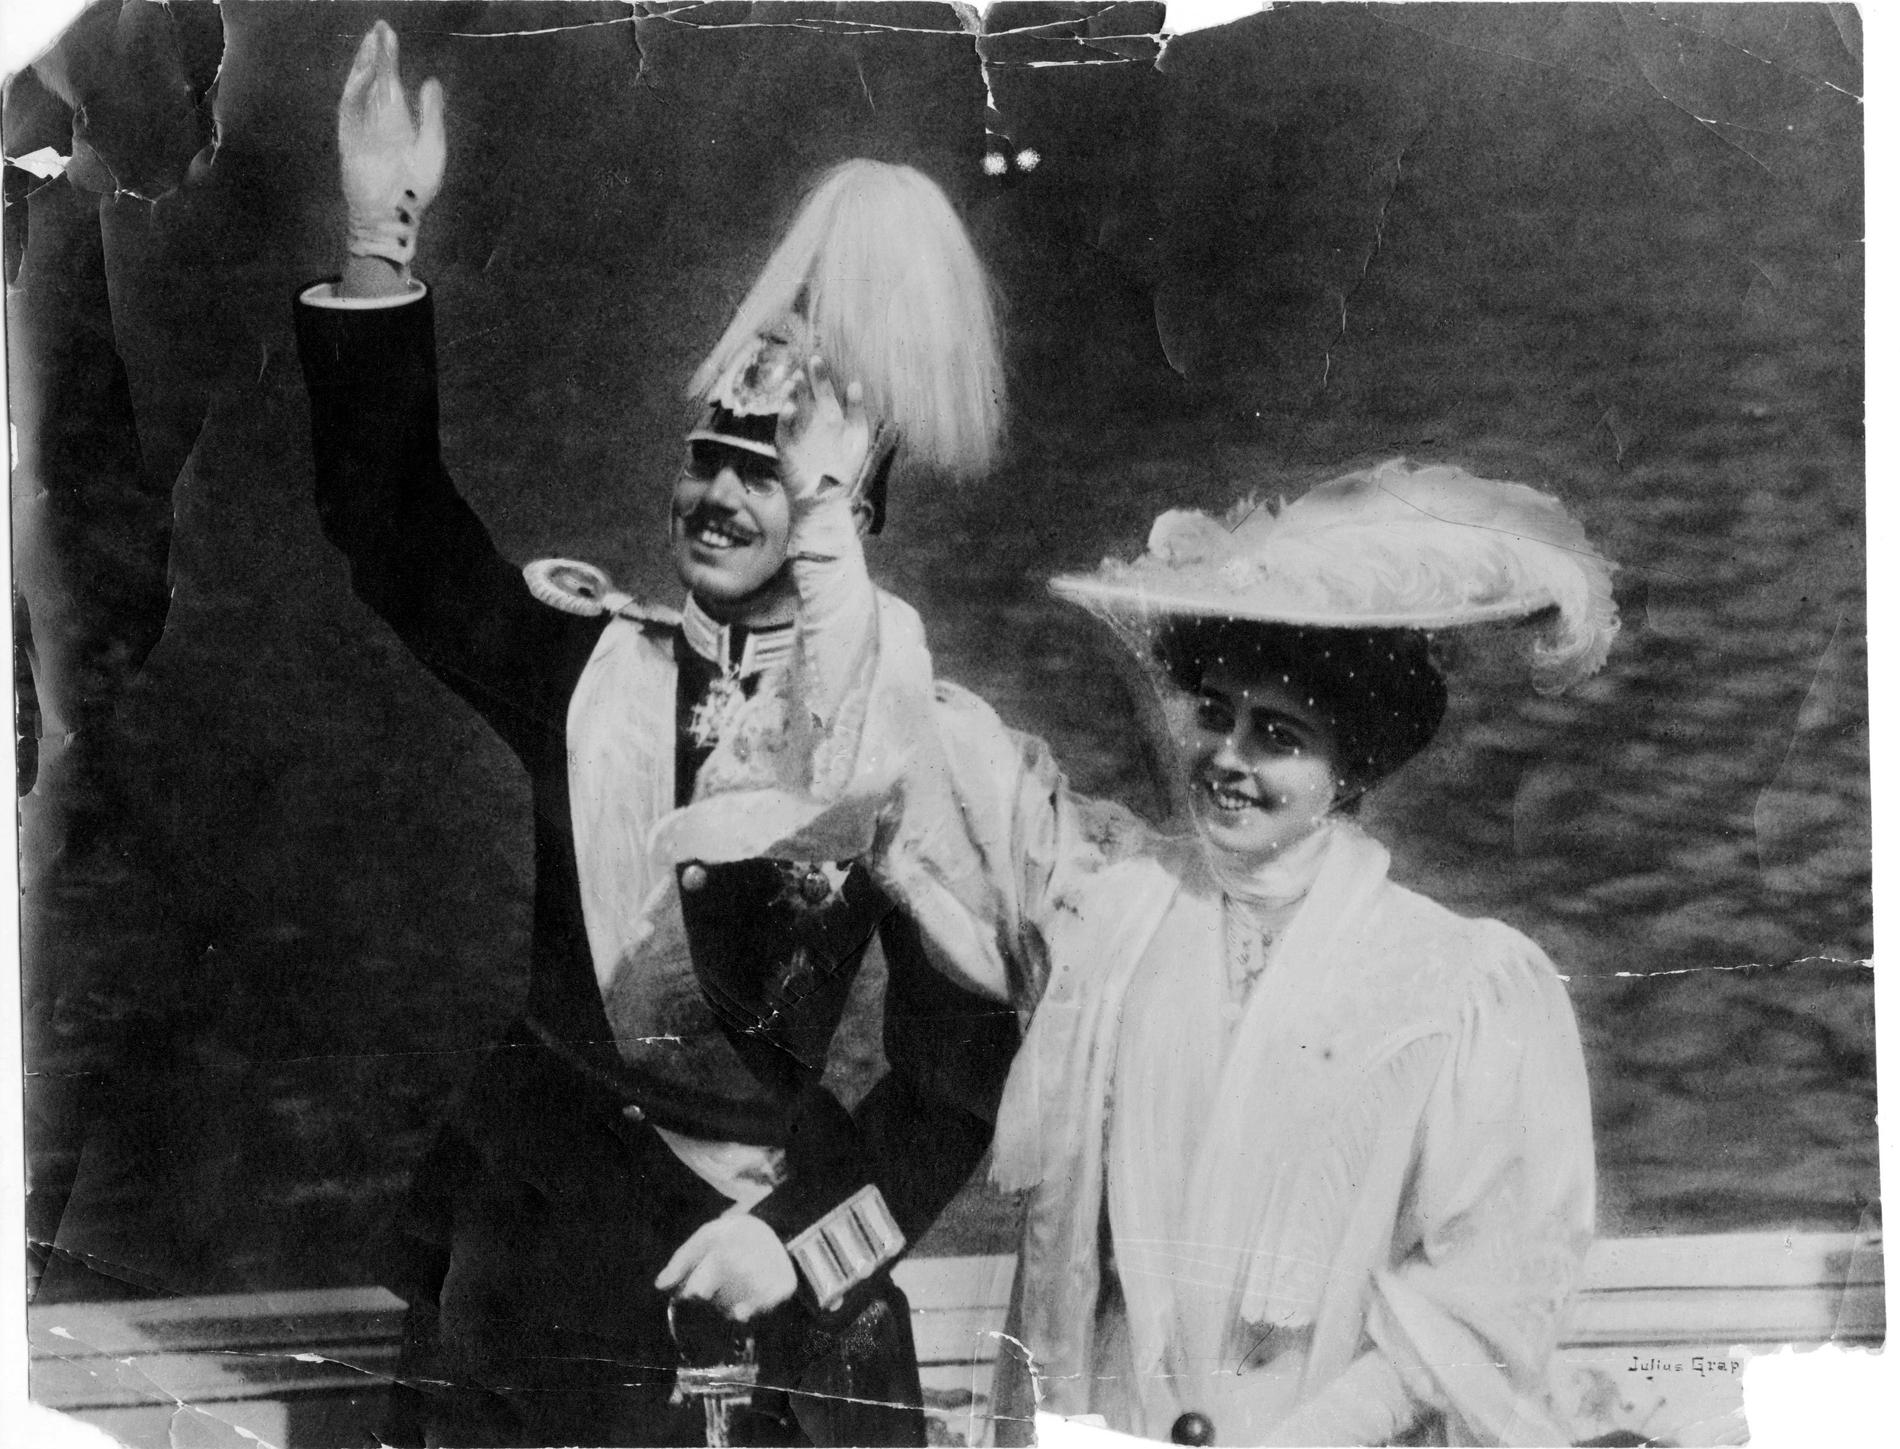 I maj 1920 dog Sveriges kronprinsessa Margareta. Här syns hon några år tidigare tillsammans med maken, den blivande kung Gustav VI Adolf. Arkivbild.